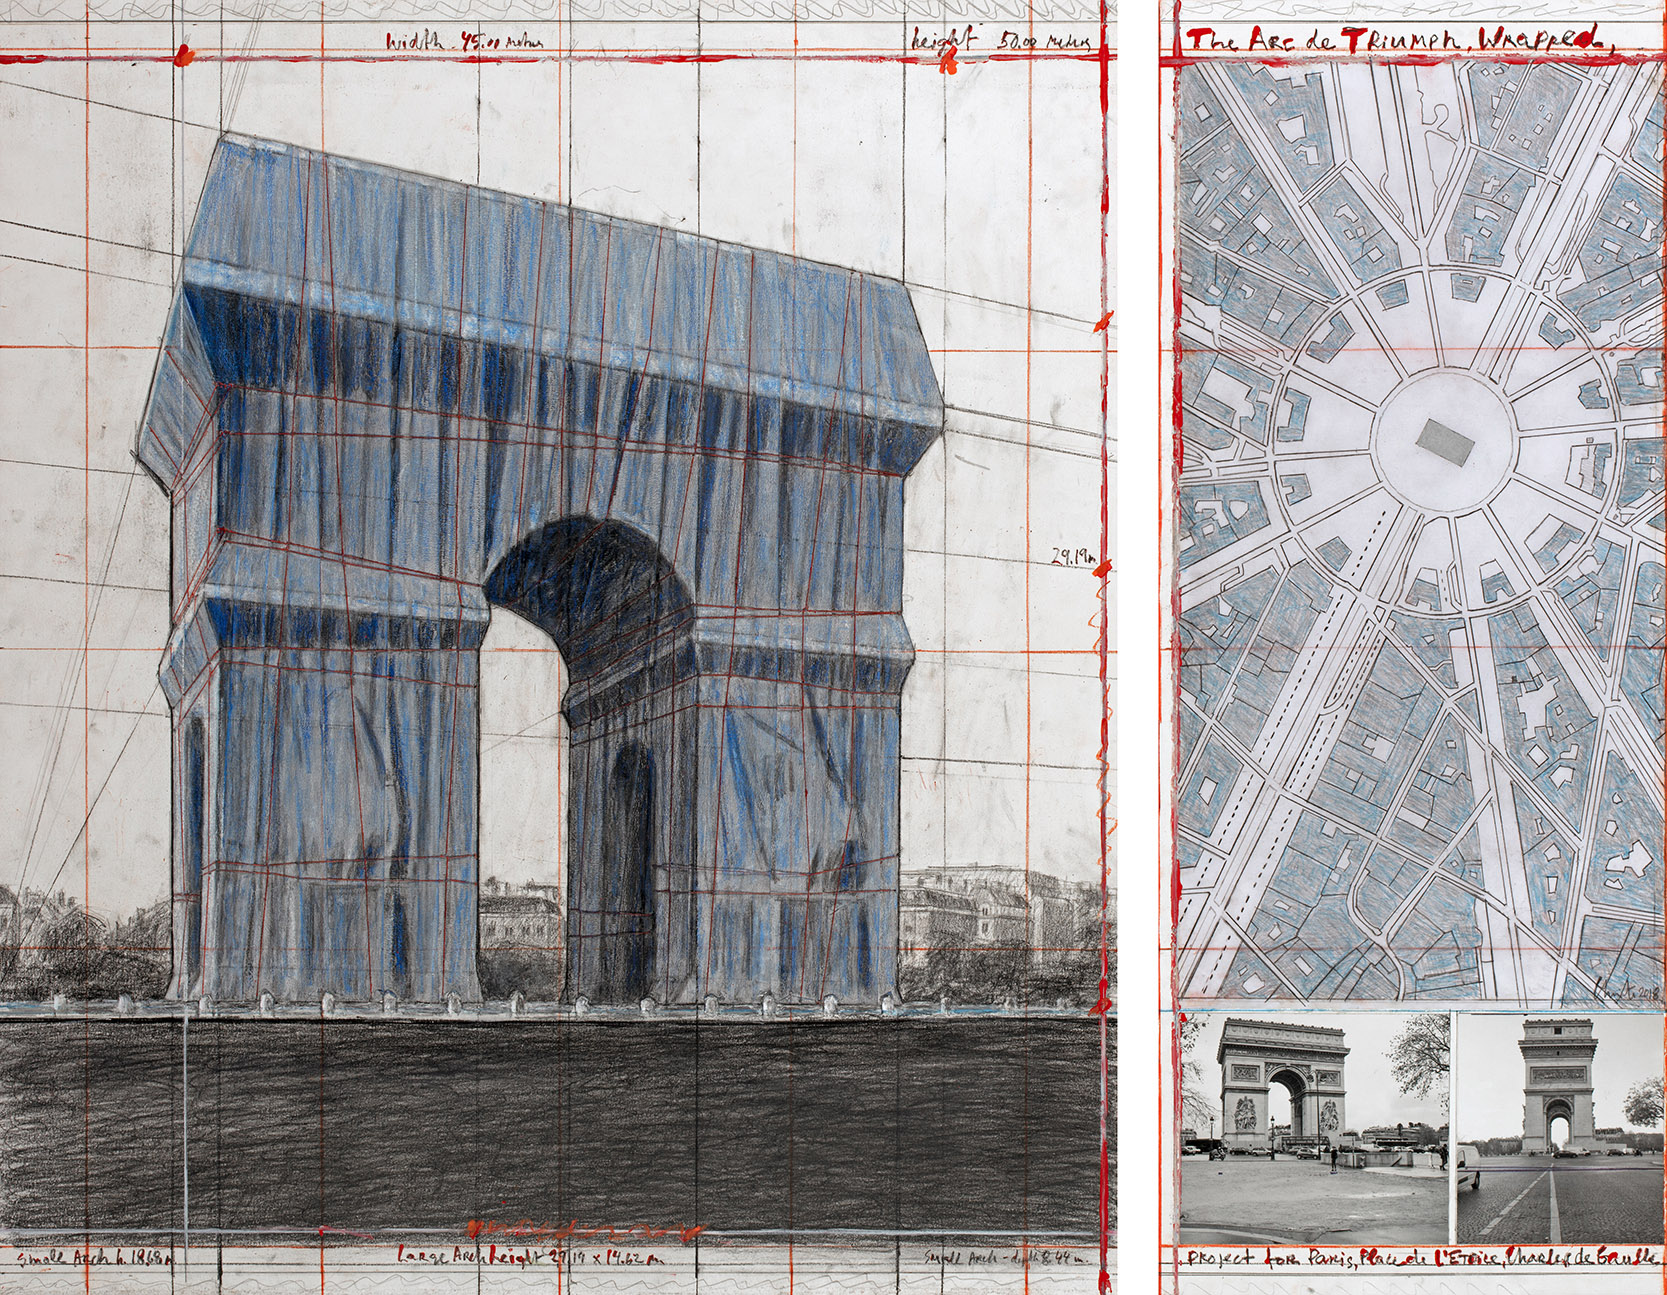 L'Arc de Triomphe, Wrapped - The Arc de Triumph, Wrapped, Project for Paris, Place de l'Etoile, Charles de Gaulle